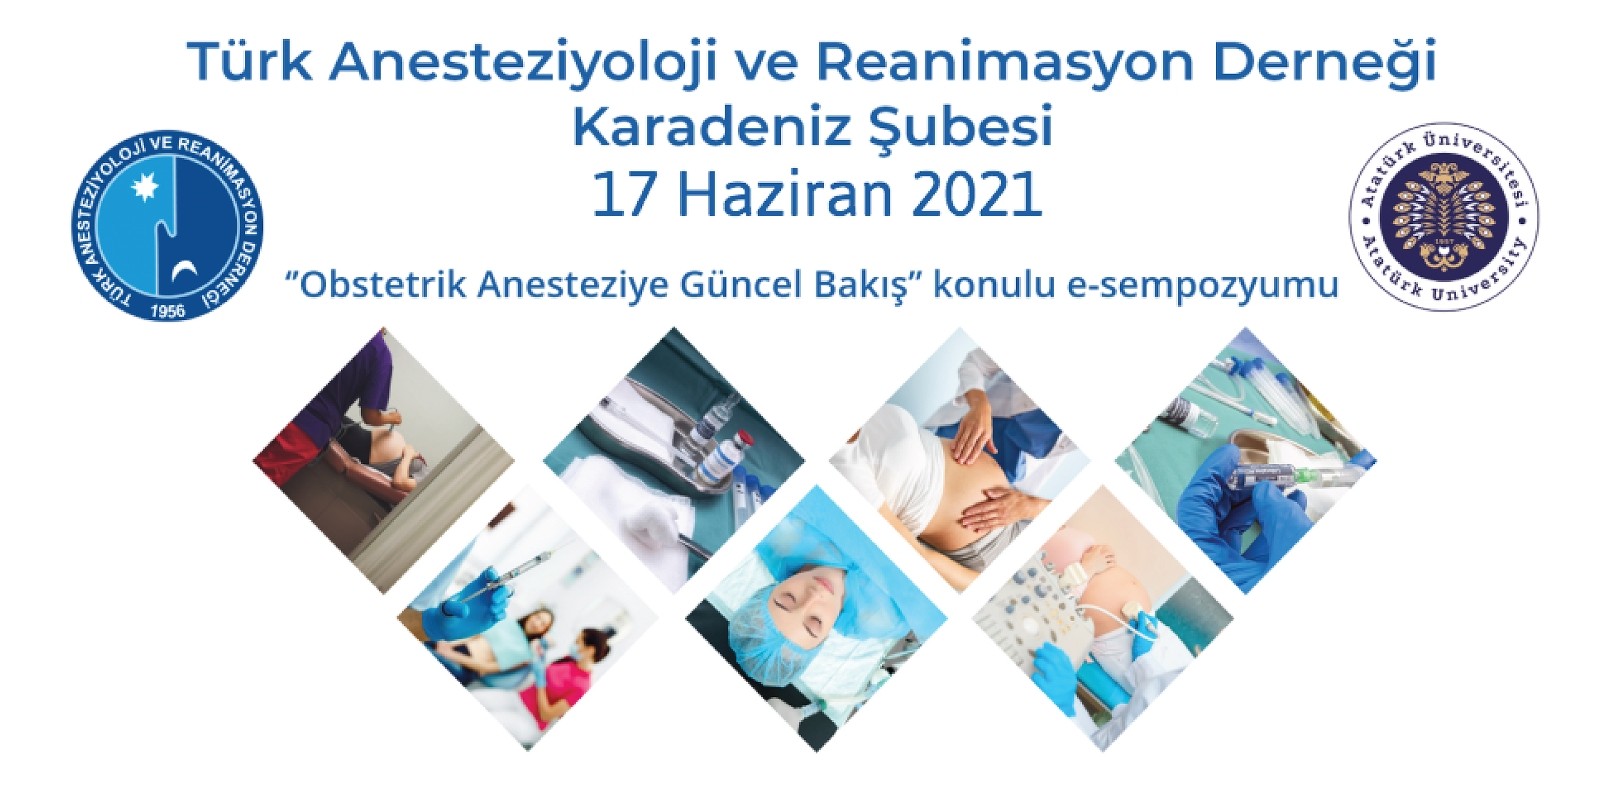 Atatürk Üniversitesi’nden Obstetrik Anesteziye güncel bir bakış